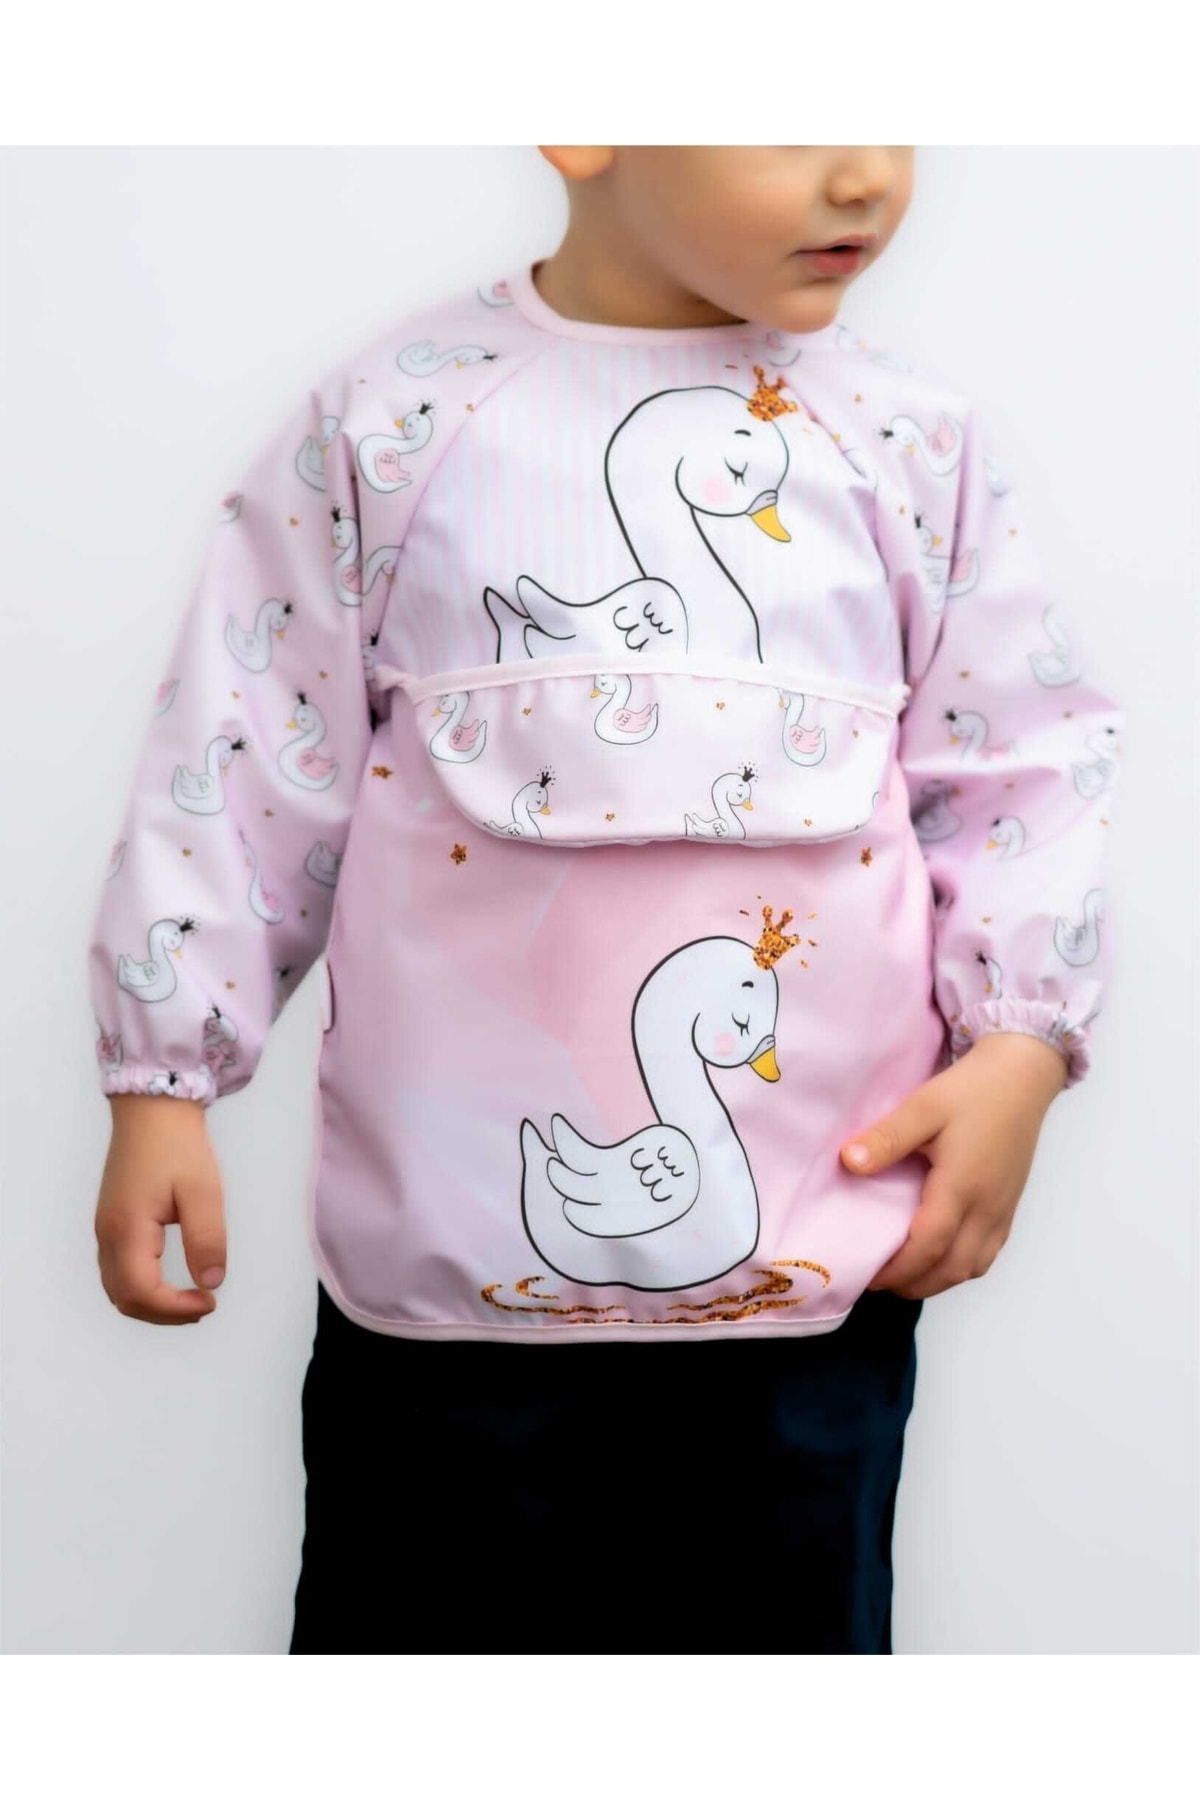 Bebelop Kuğu Desenli Giyilebilir Kollu Unisex Kız Erkek Bebek Mama Önlüğü